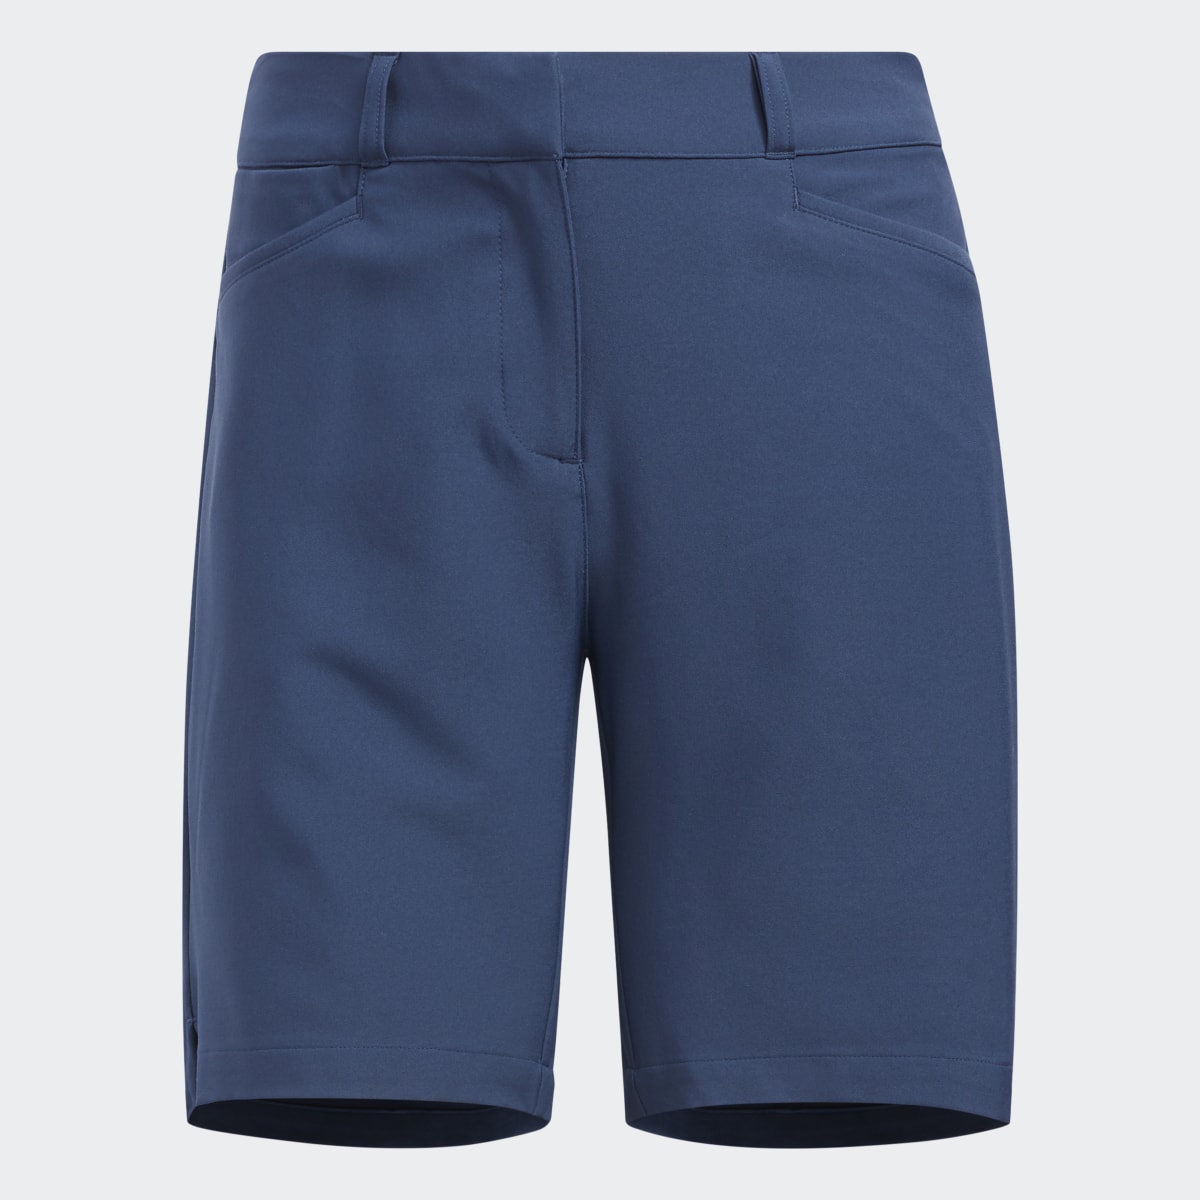 Adidas 7-Inch Shorts. 4